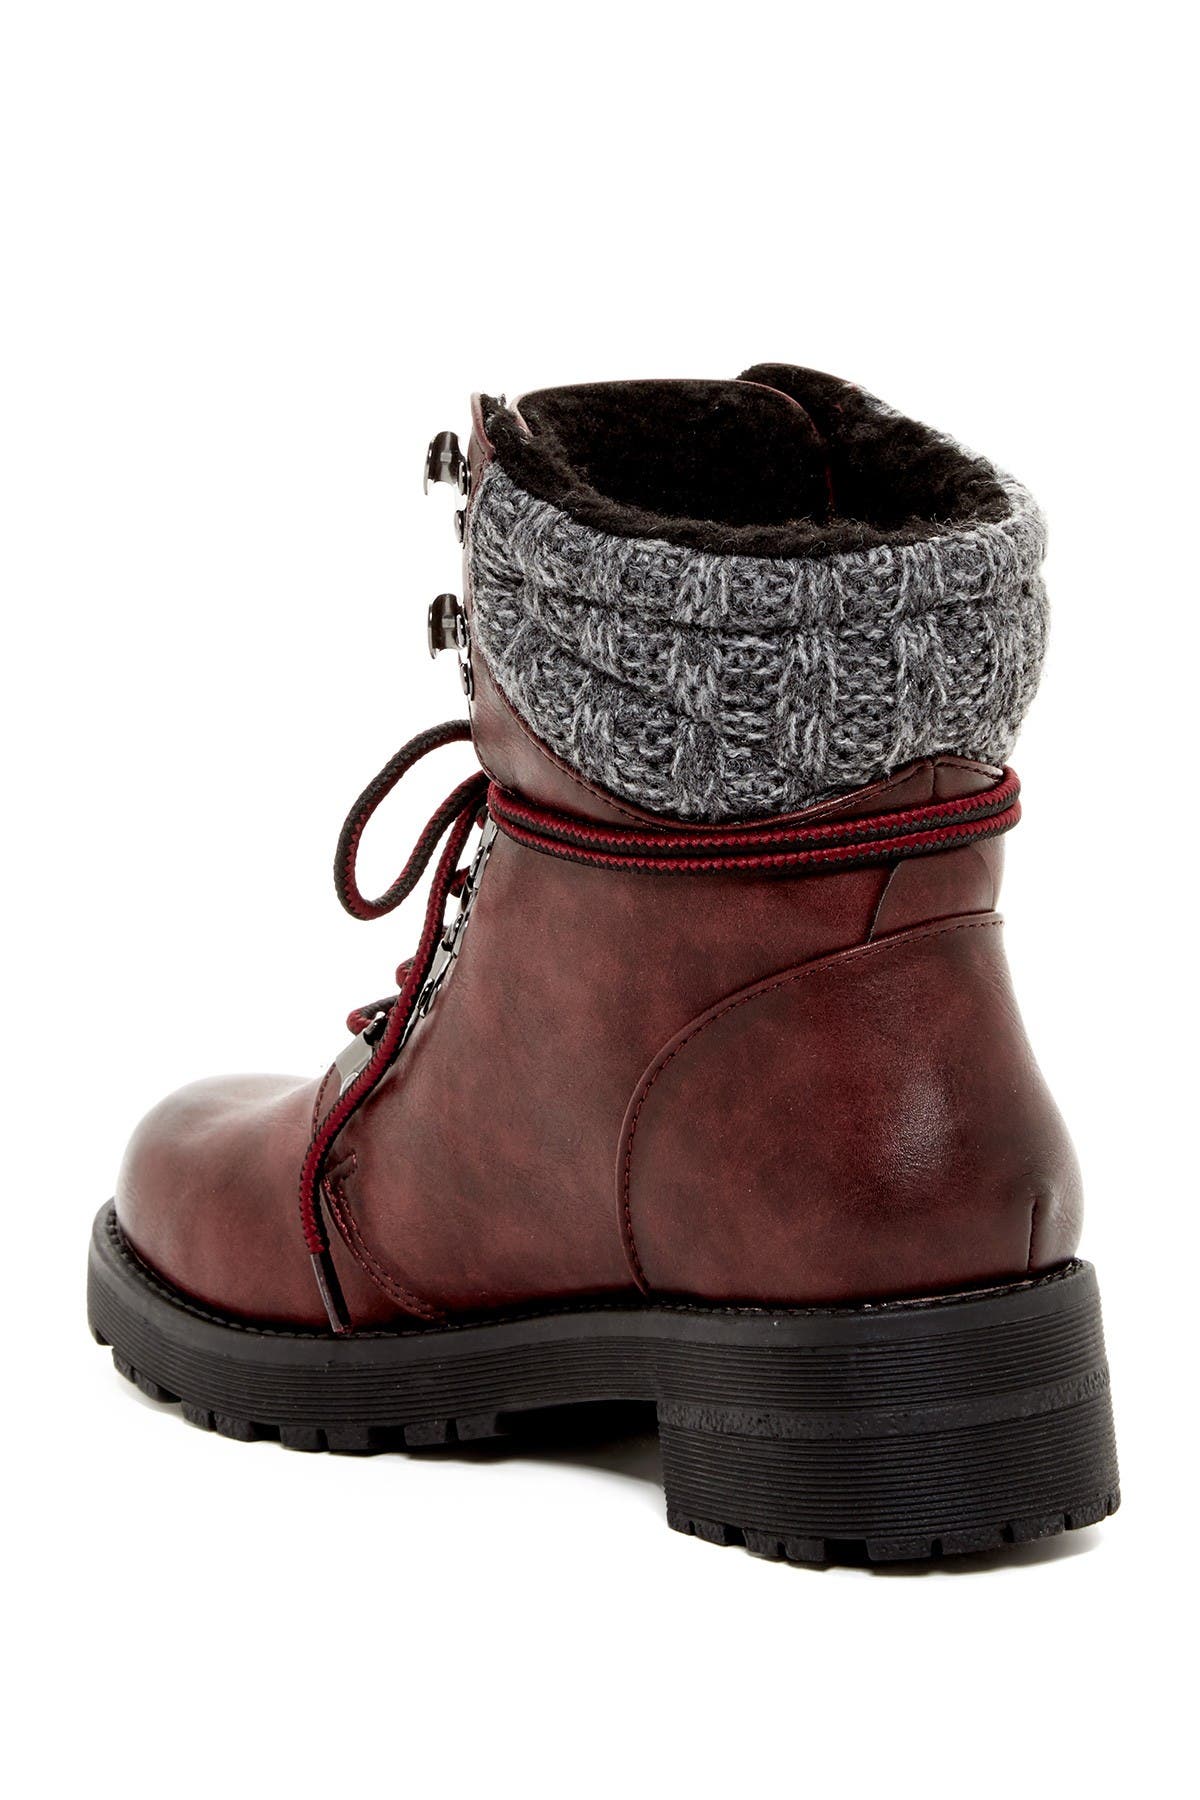 mia women's maylynn winter boot